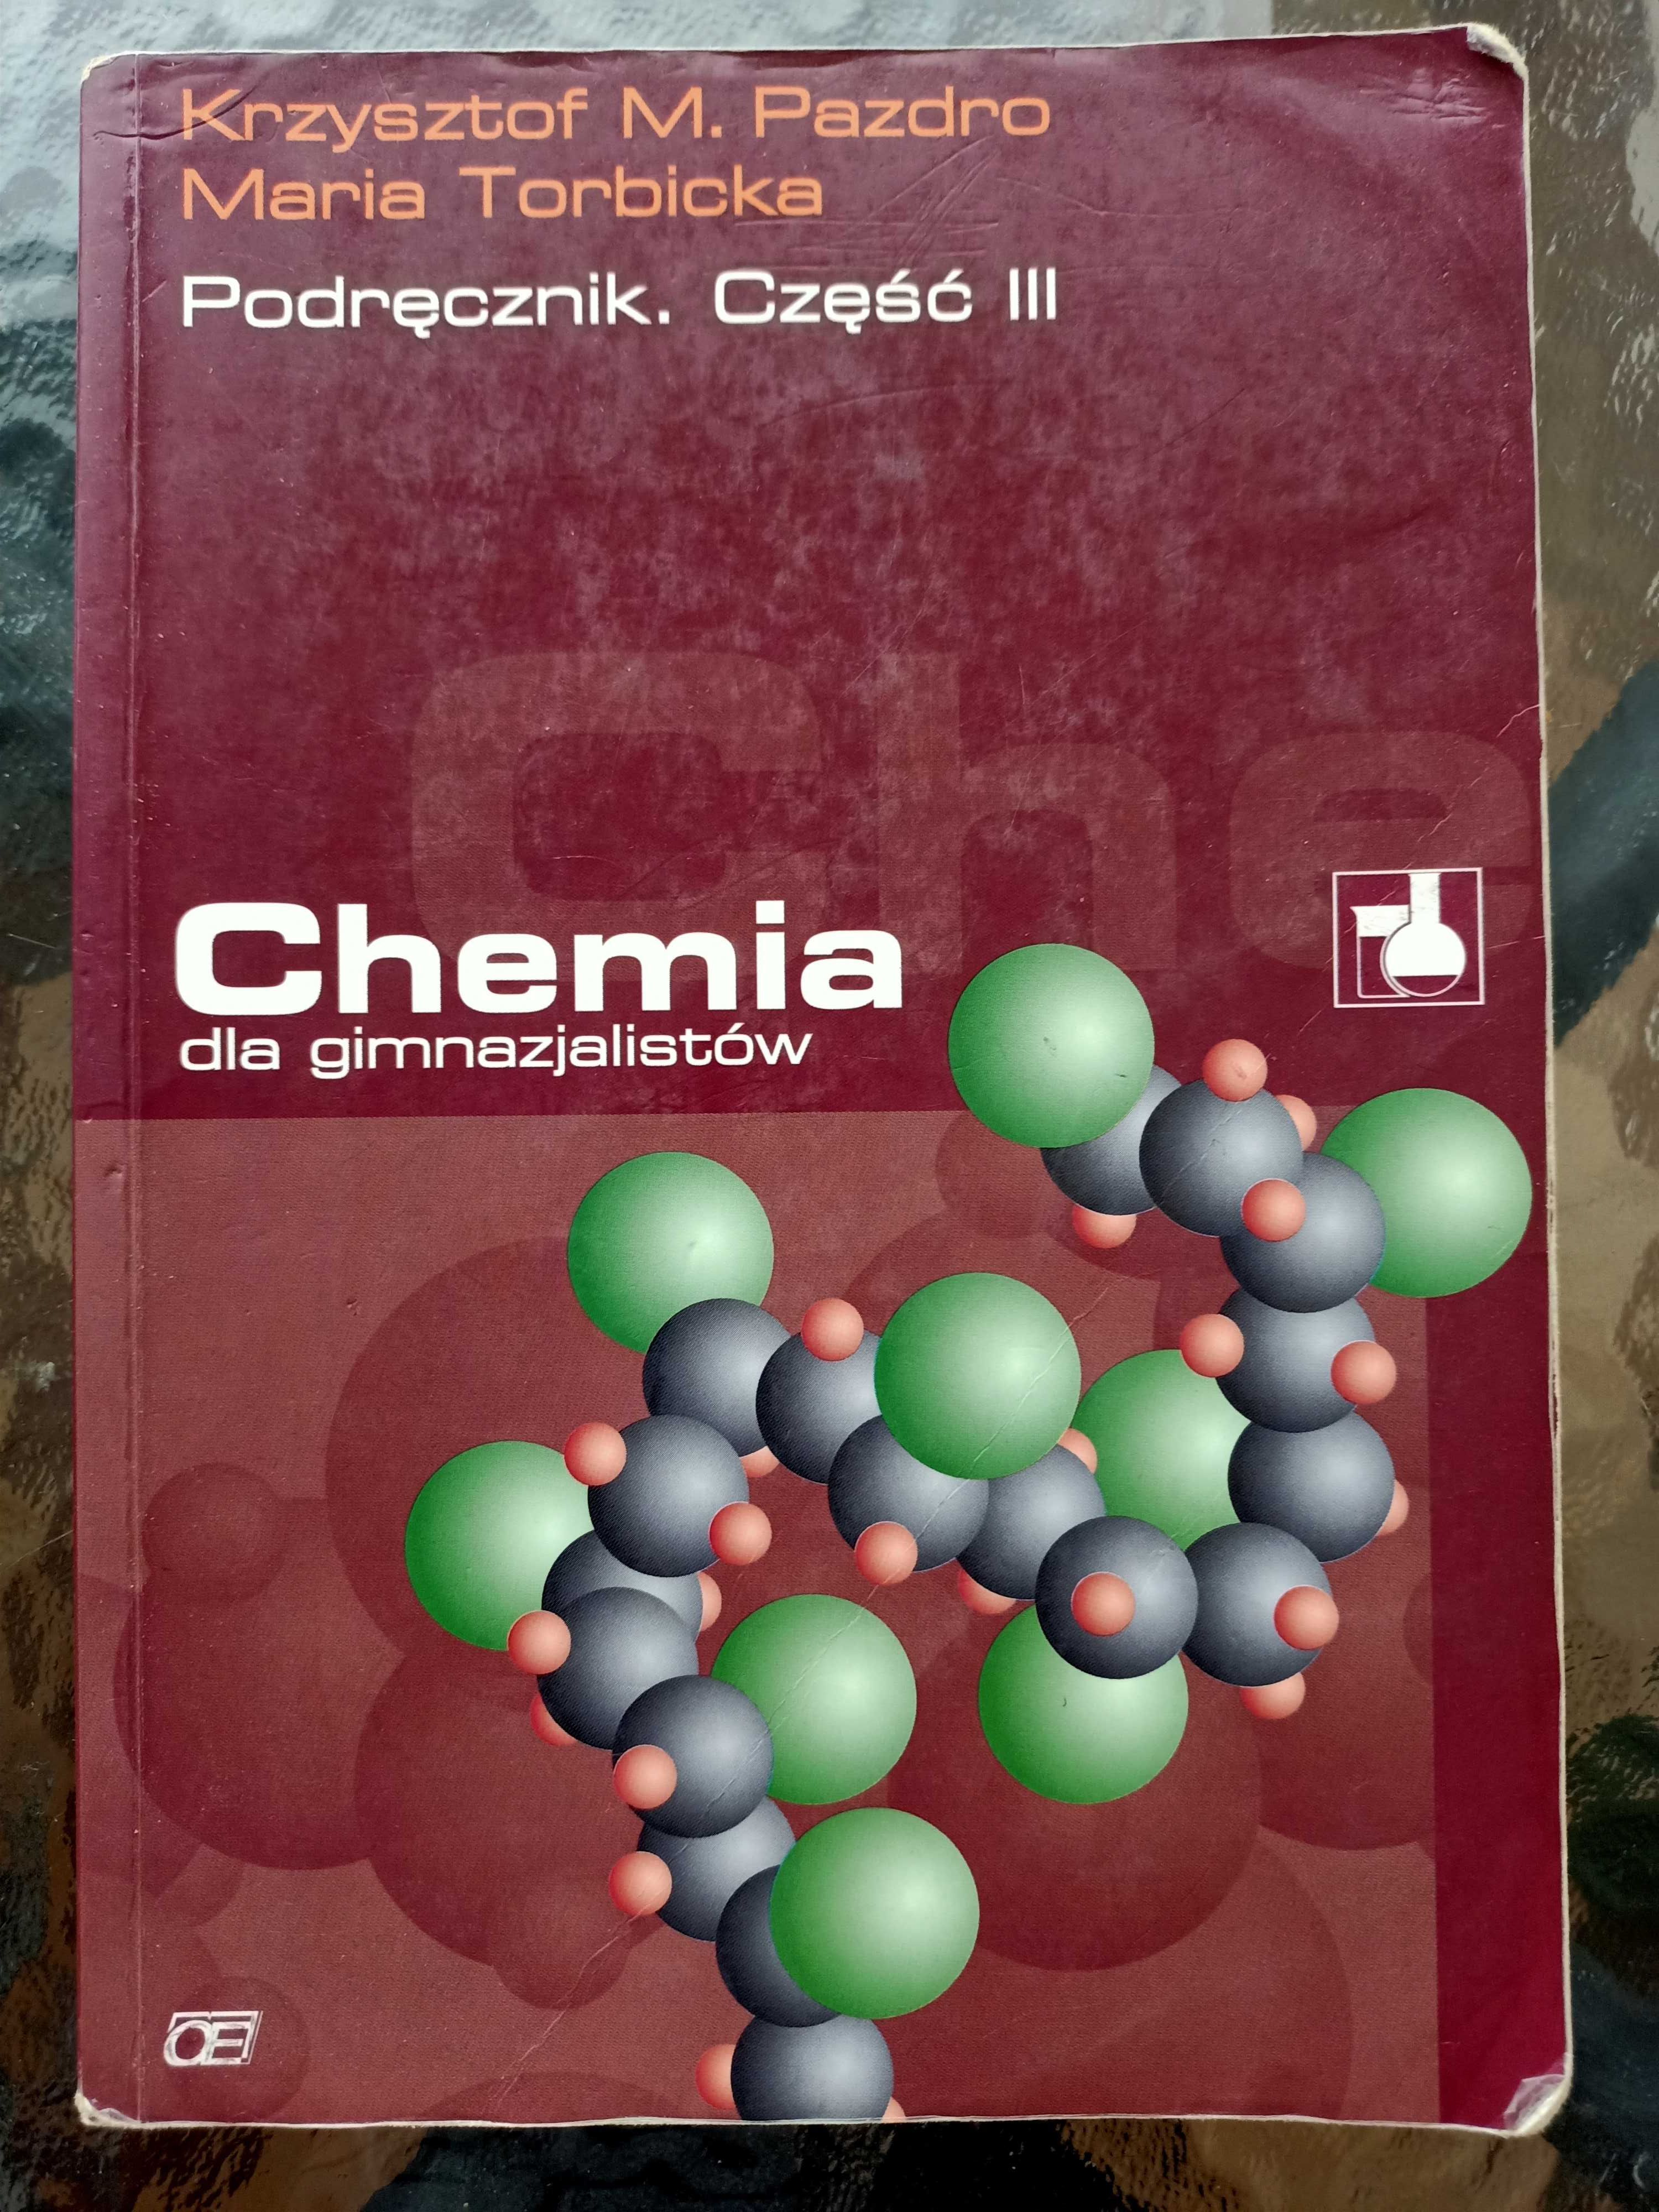 Chemia dla gimnazjalistów, Krzysztof Pazdro, cz. III, chemia organiczn